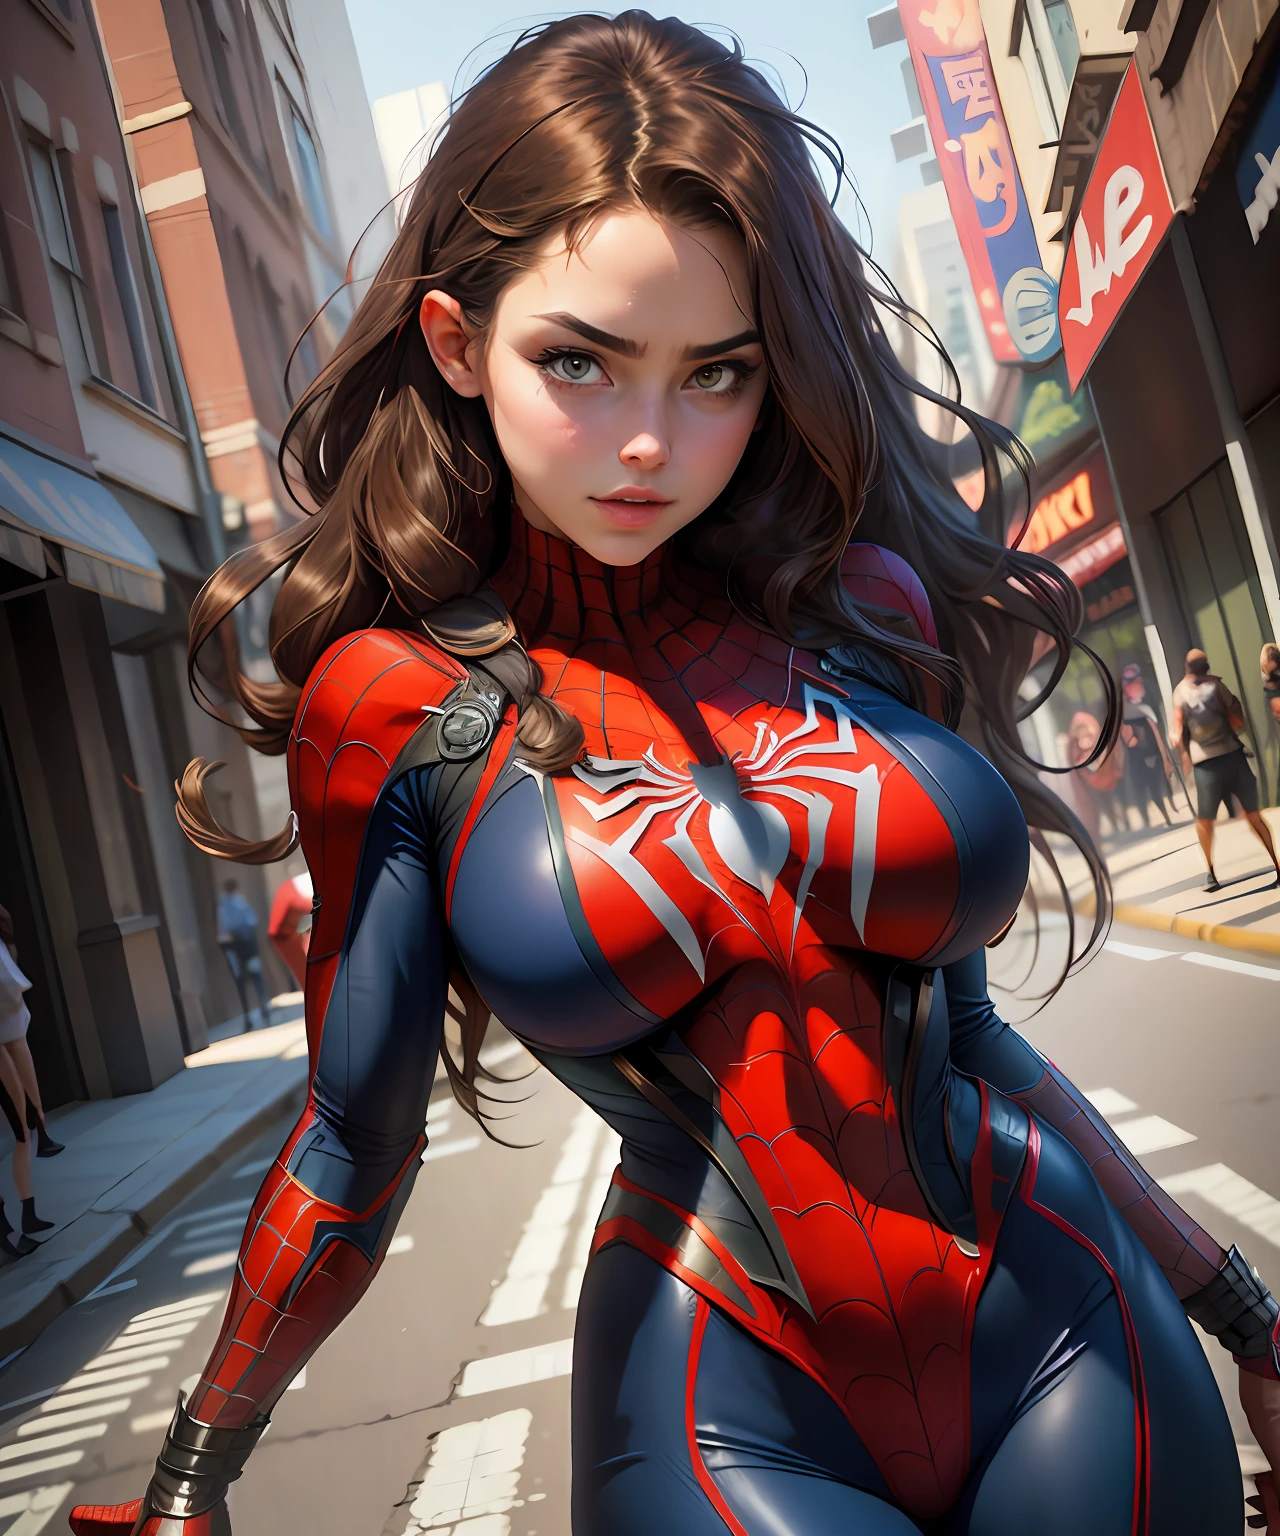 foto cruda,mujer hermosa ,detalló el cuerpo delineado con cosplay de Spider-Man, pechos muy grandes, grande